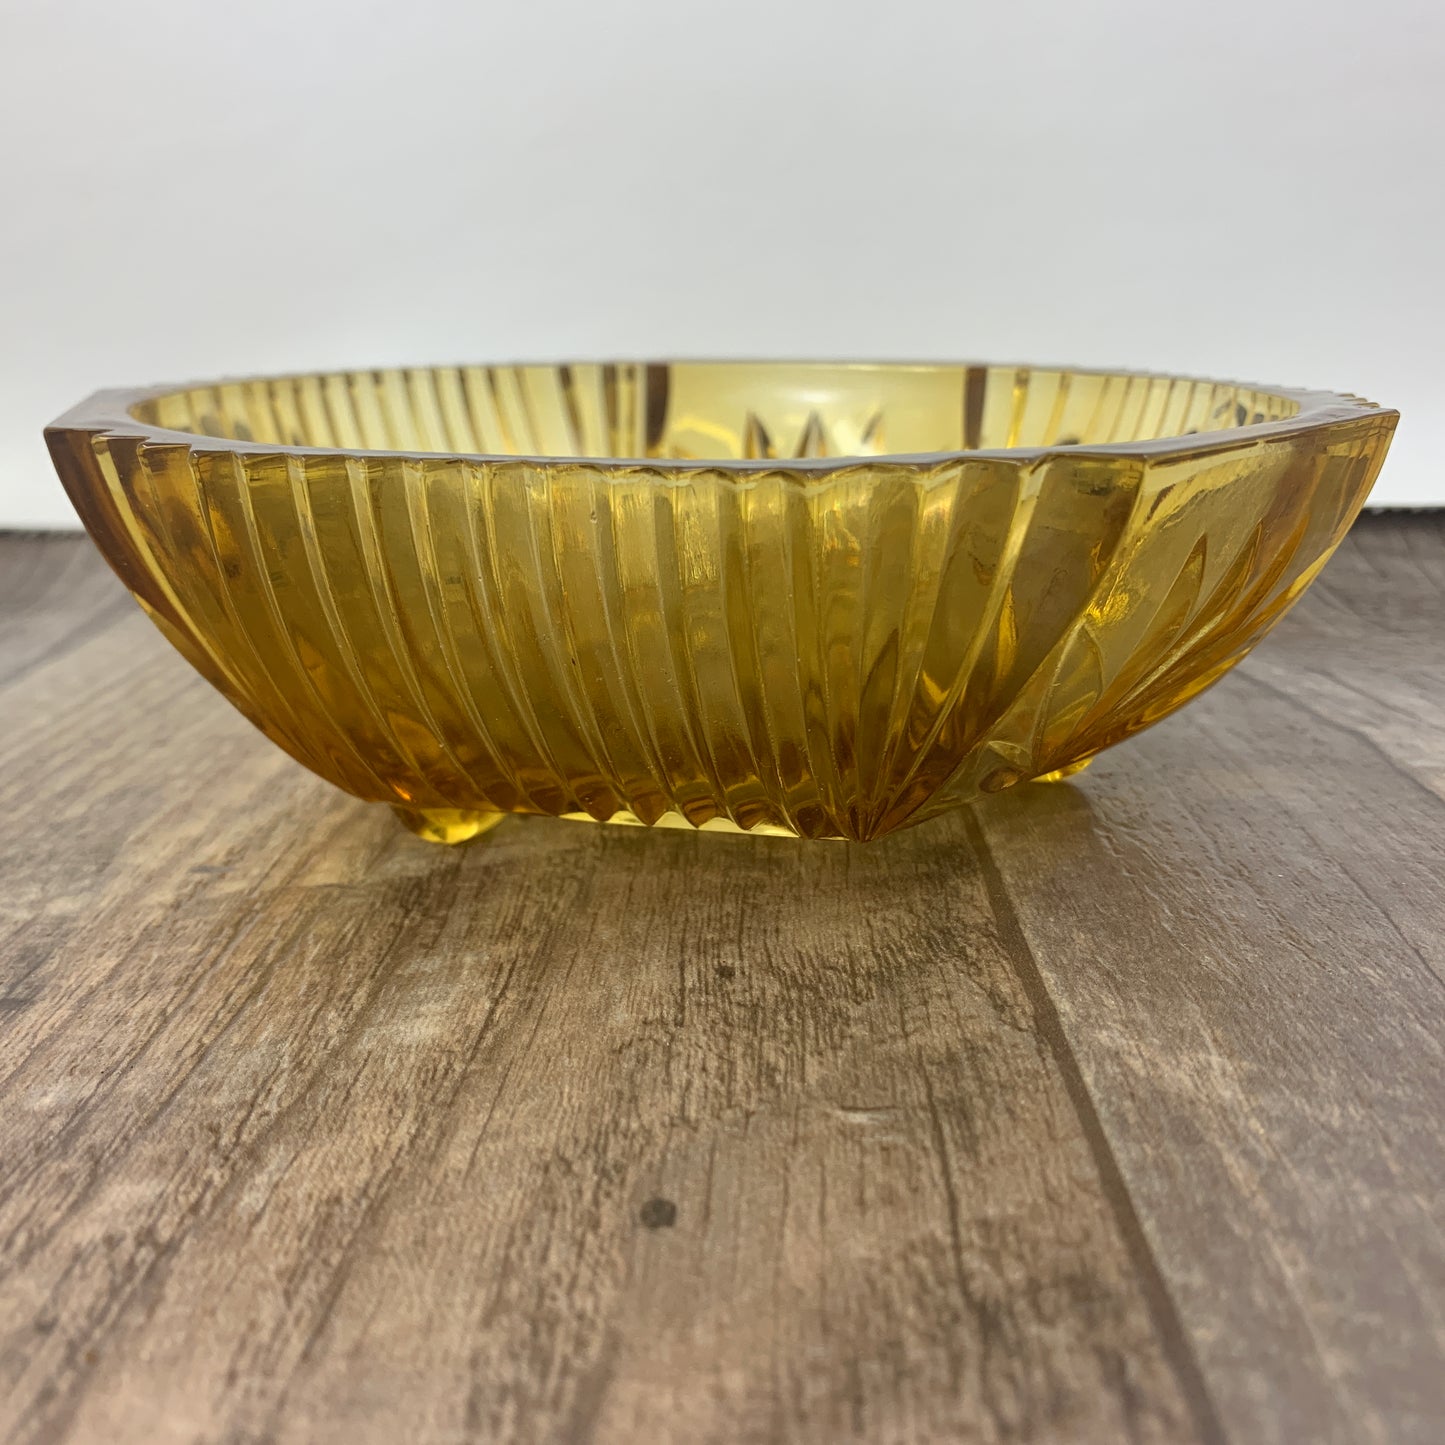 Amber Glass Bowl, Vintage Pressed Glass Serving Bowl, Vintage Home